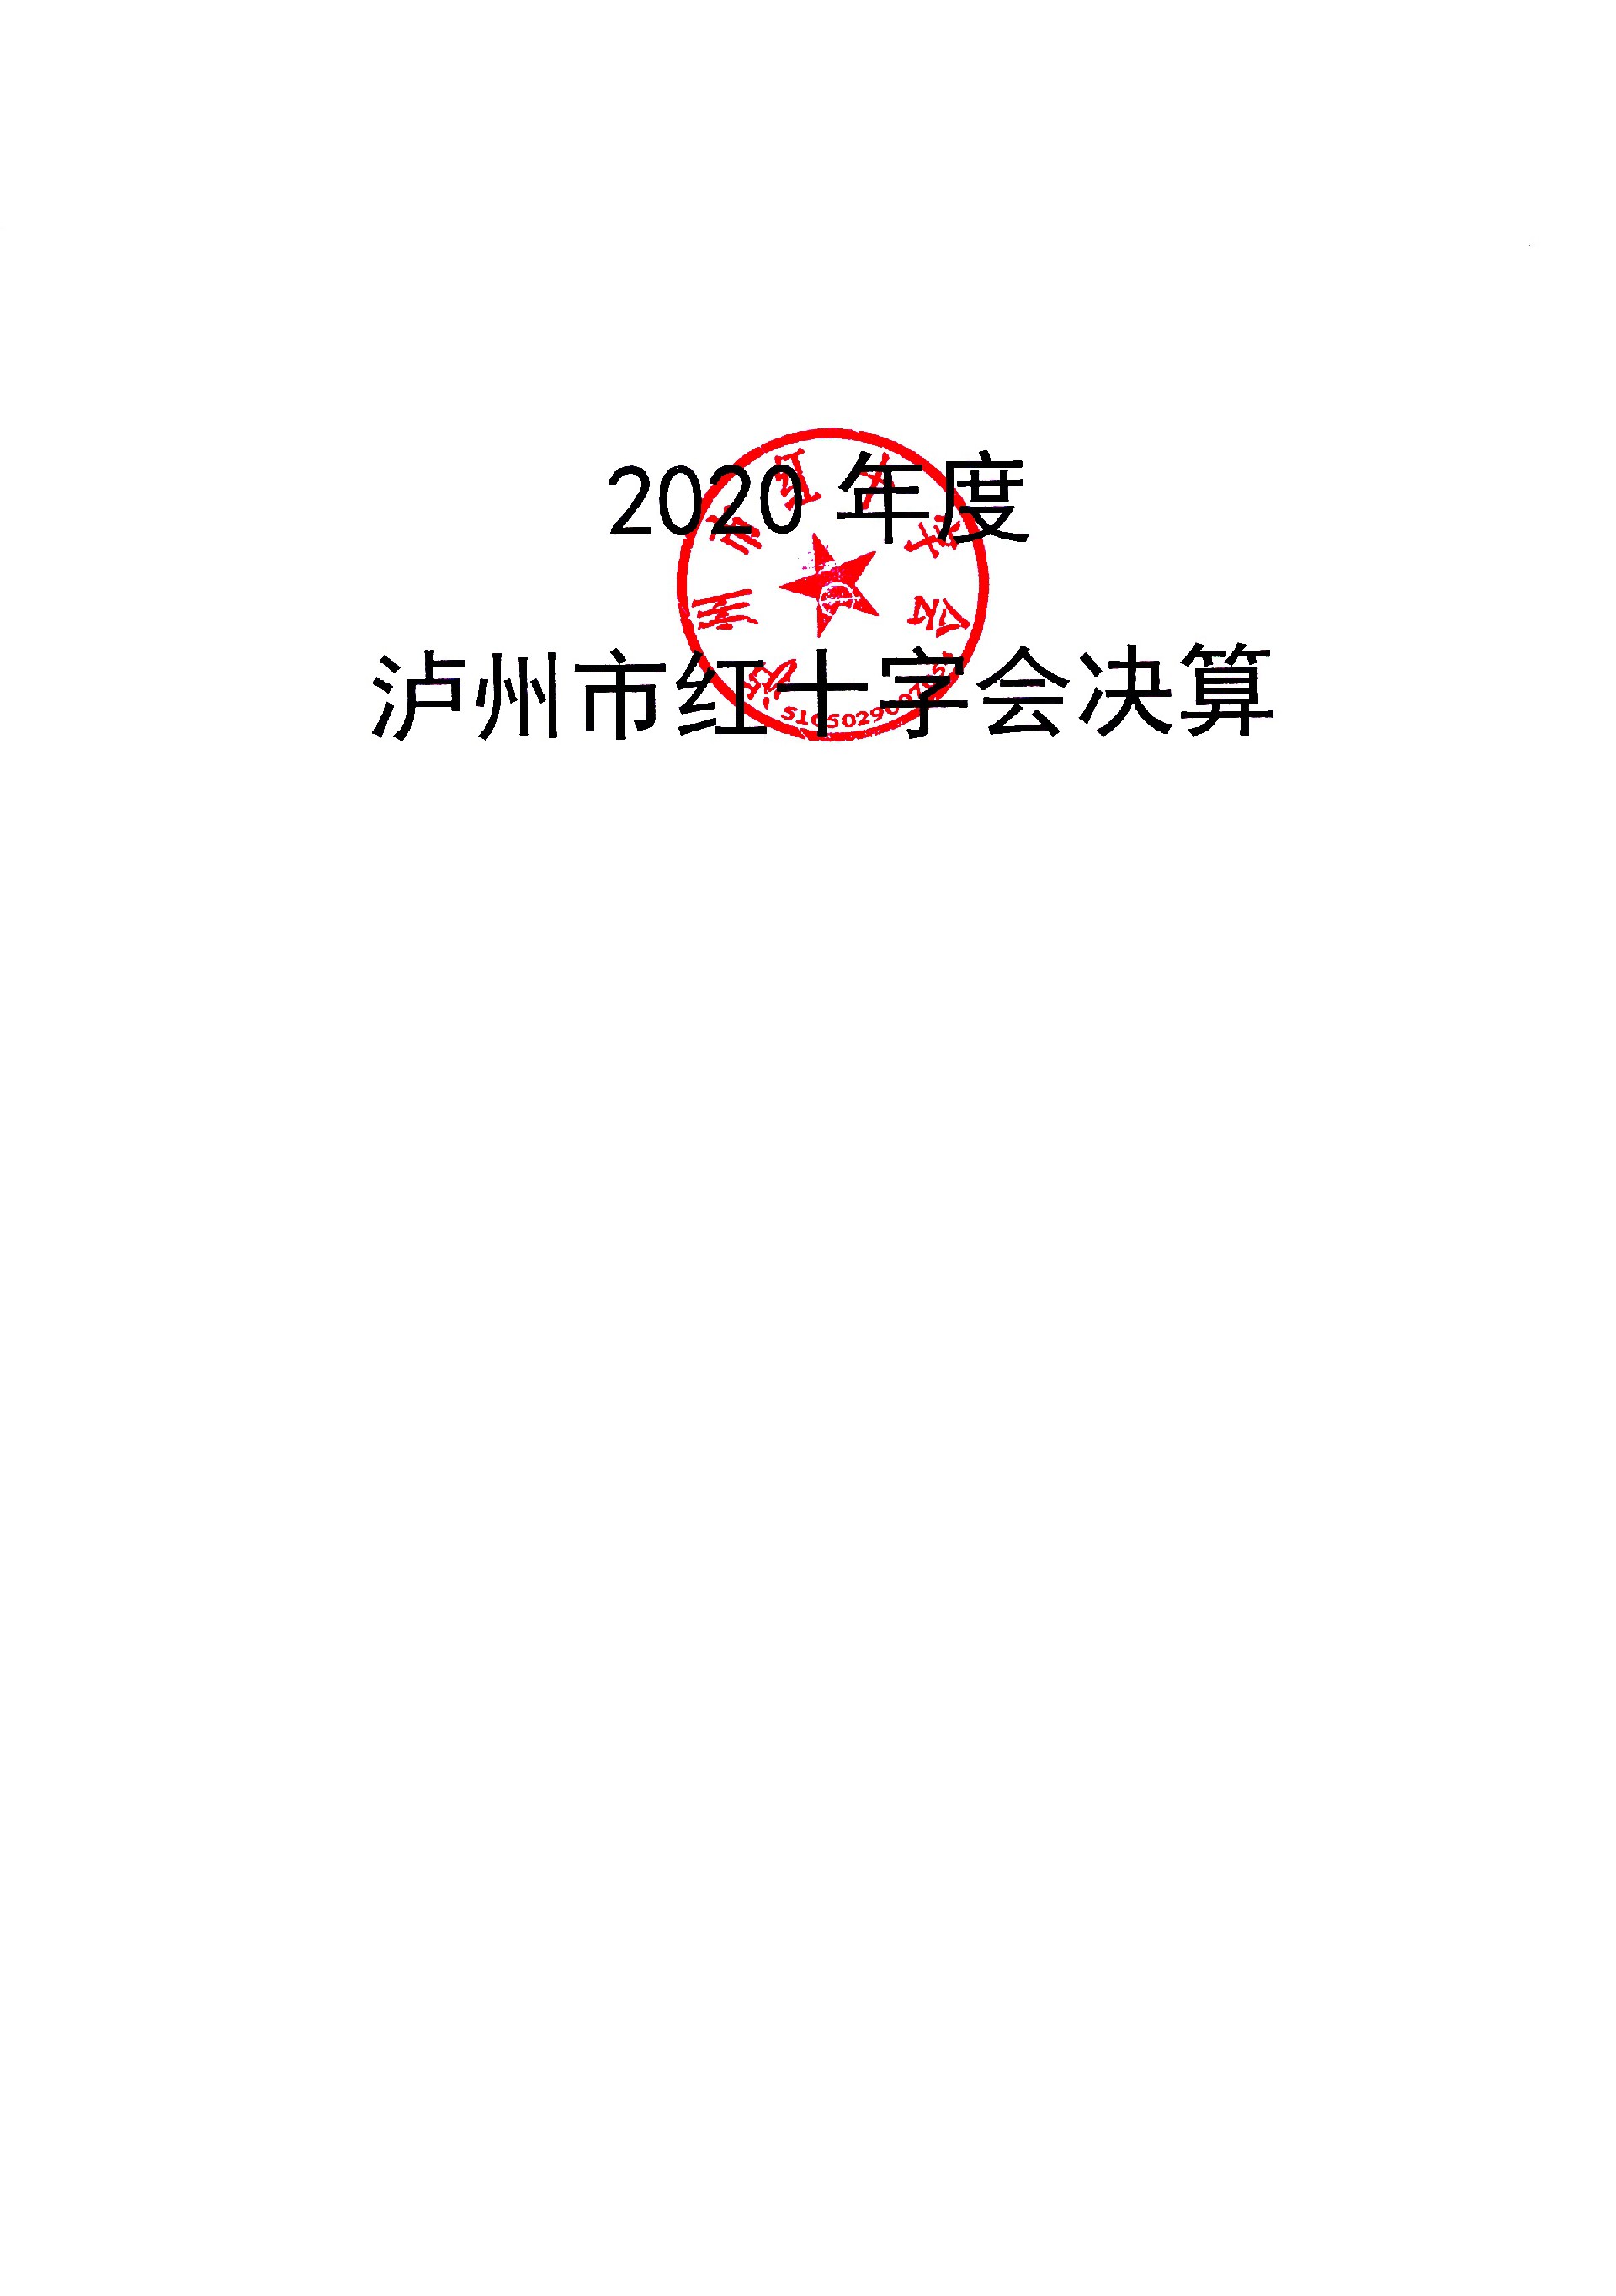 2020年泸州市红会决算编制说明_页面_01.jpg